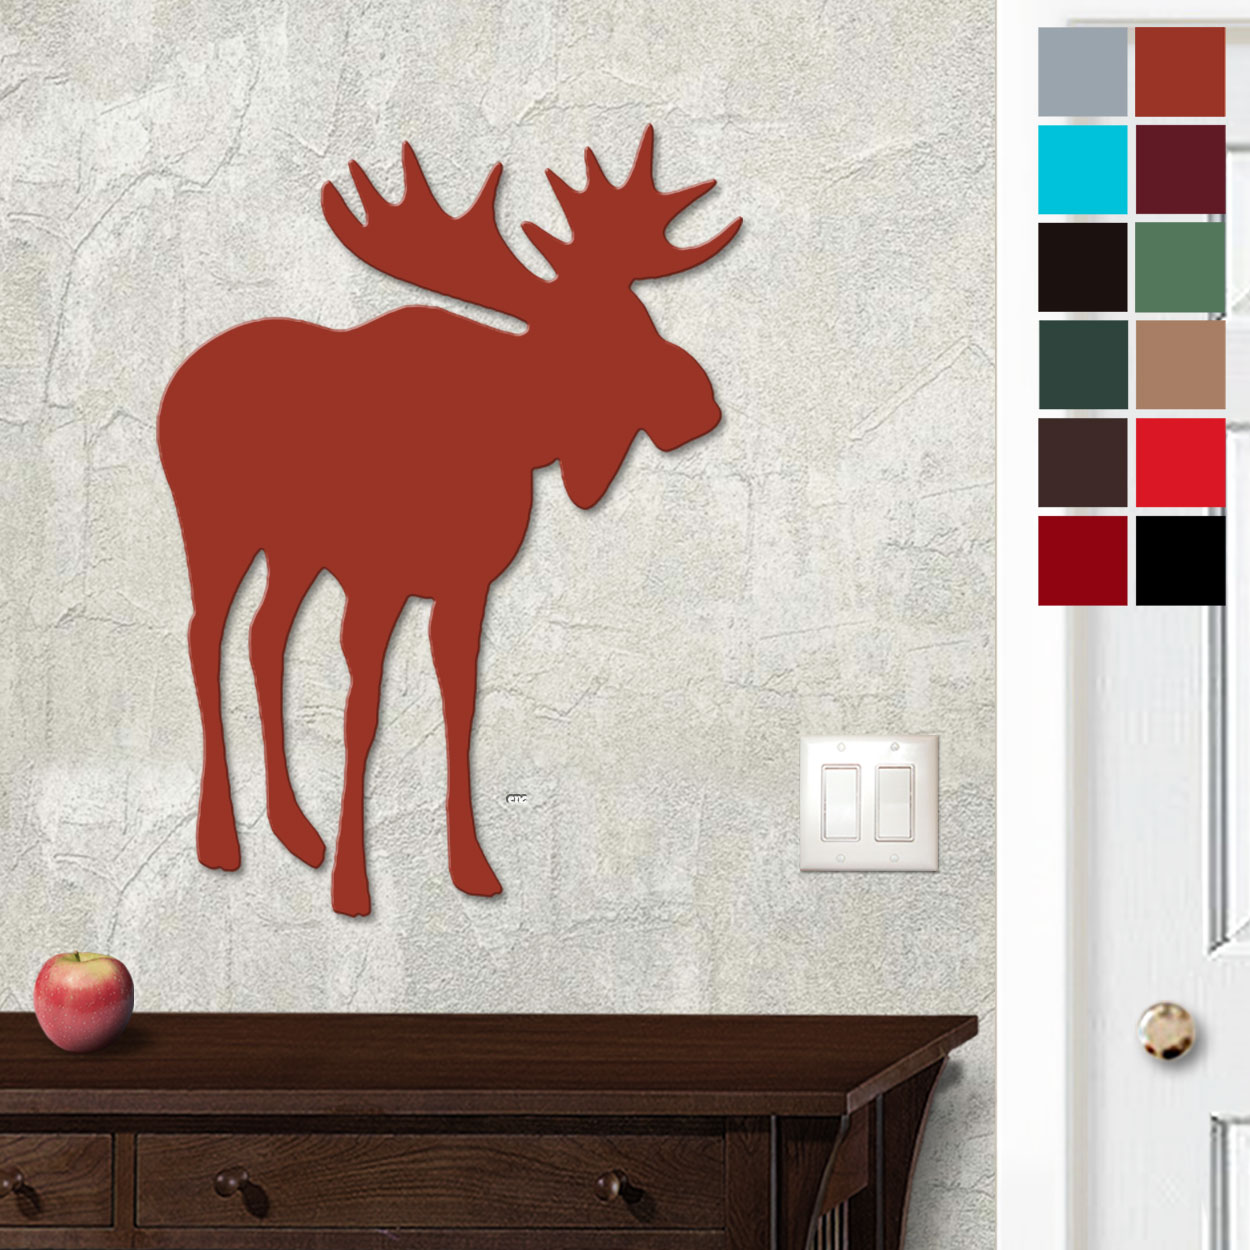 625413 - 18in or 24in Floating Metal Wall Art - Lone Moose - Choose Color